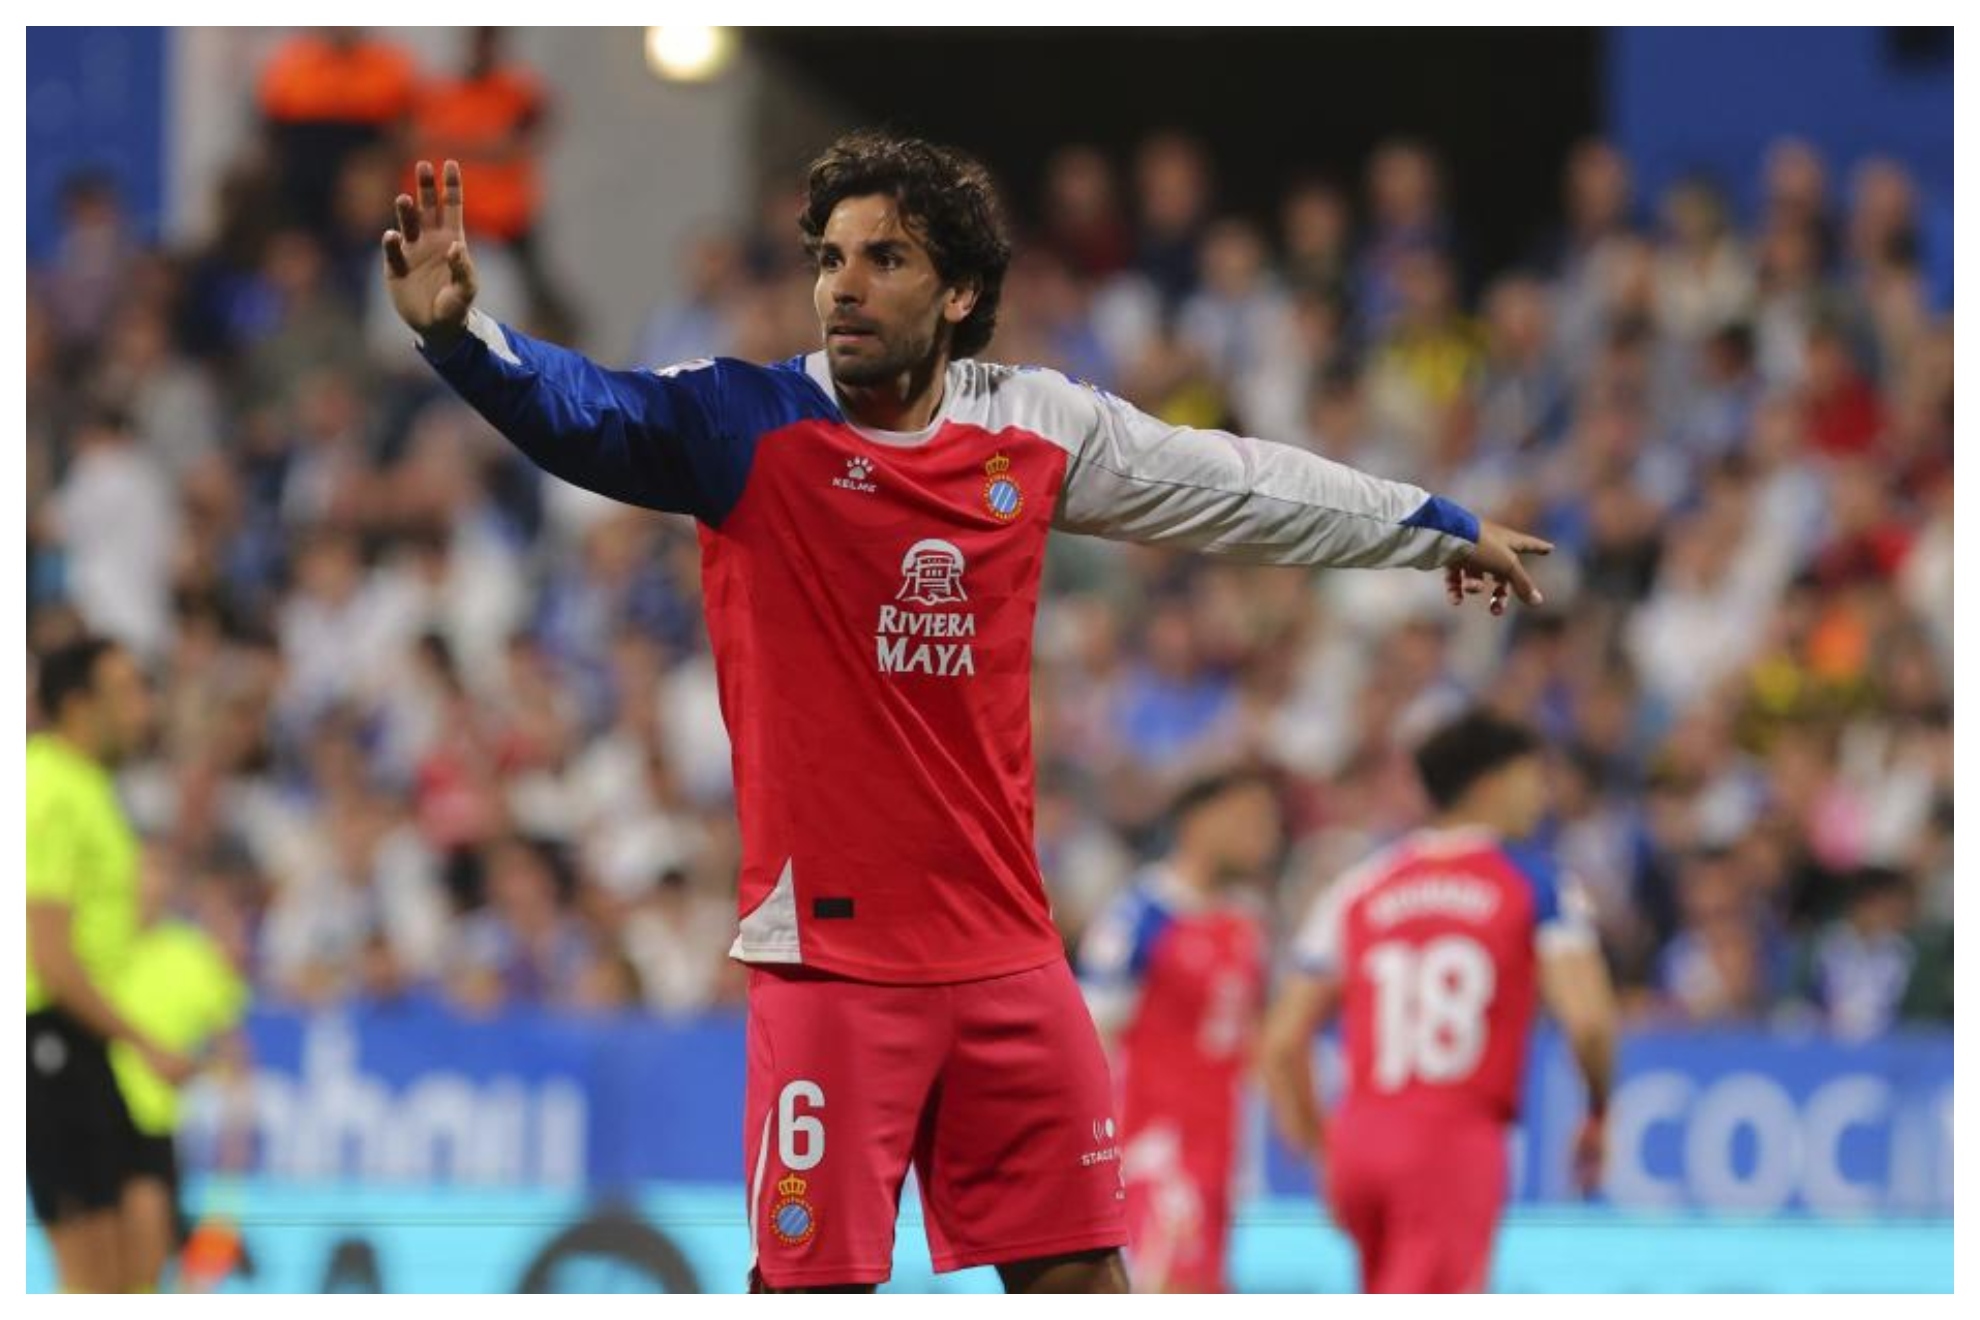 Leandro Cabrera gesticula durante el partido del Espanyol en La Romareda